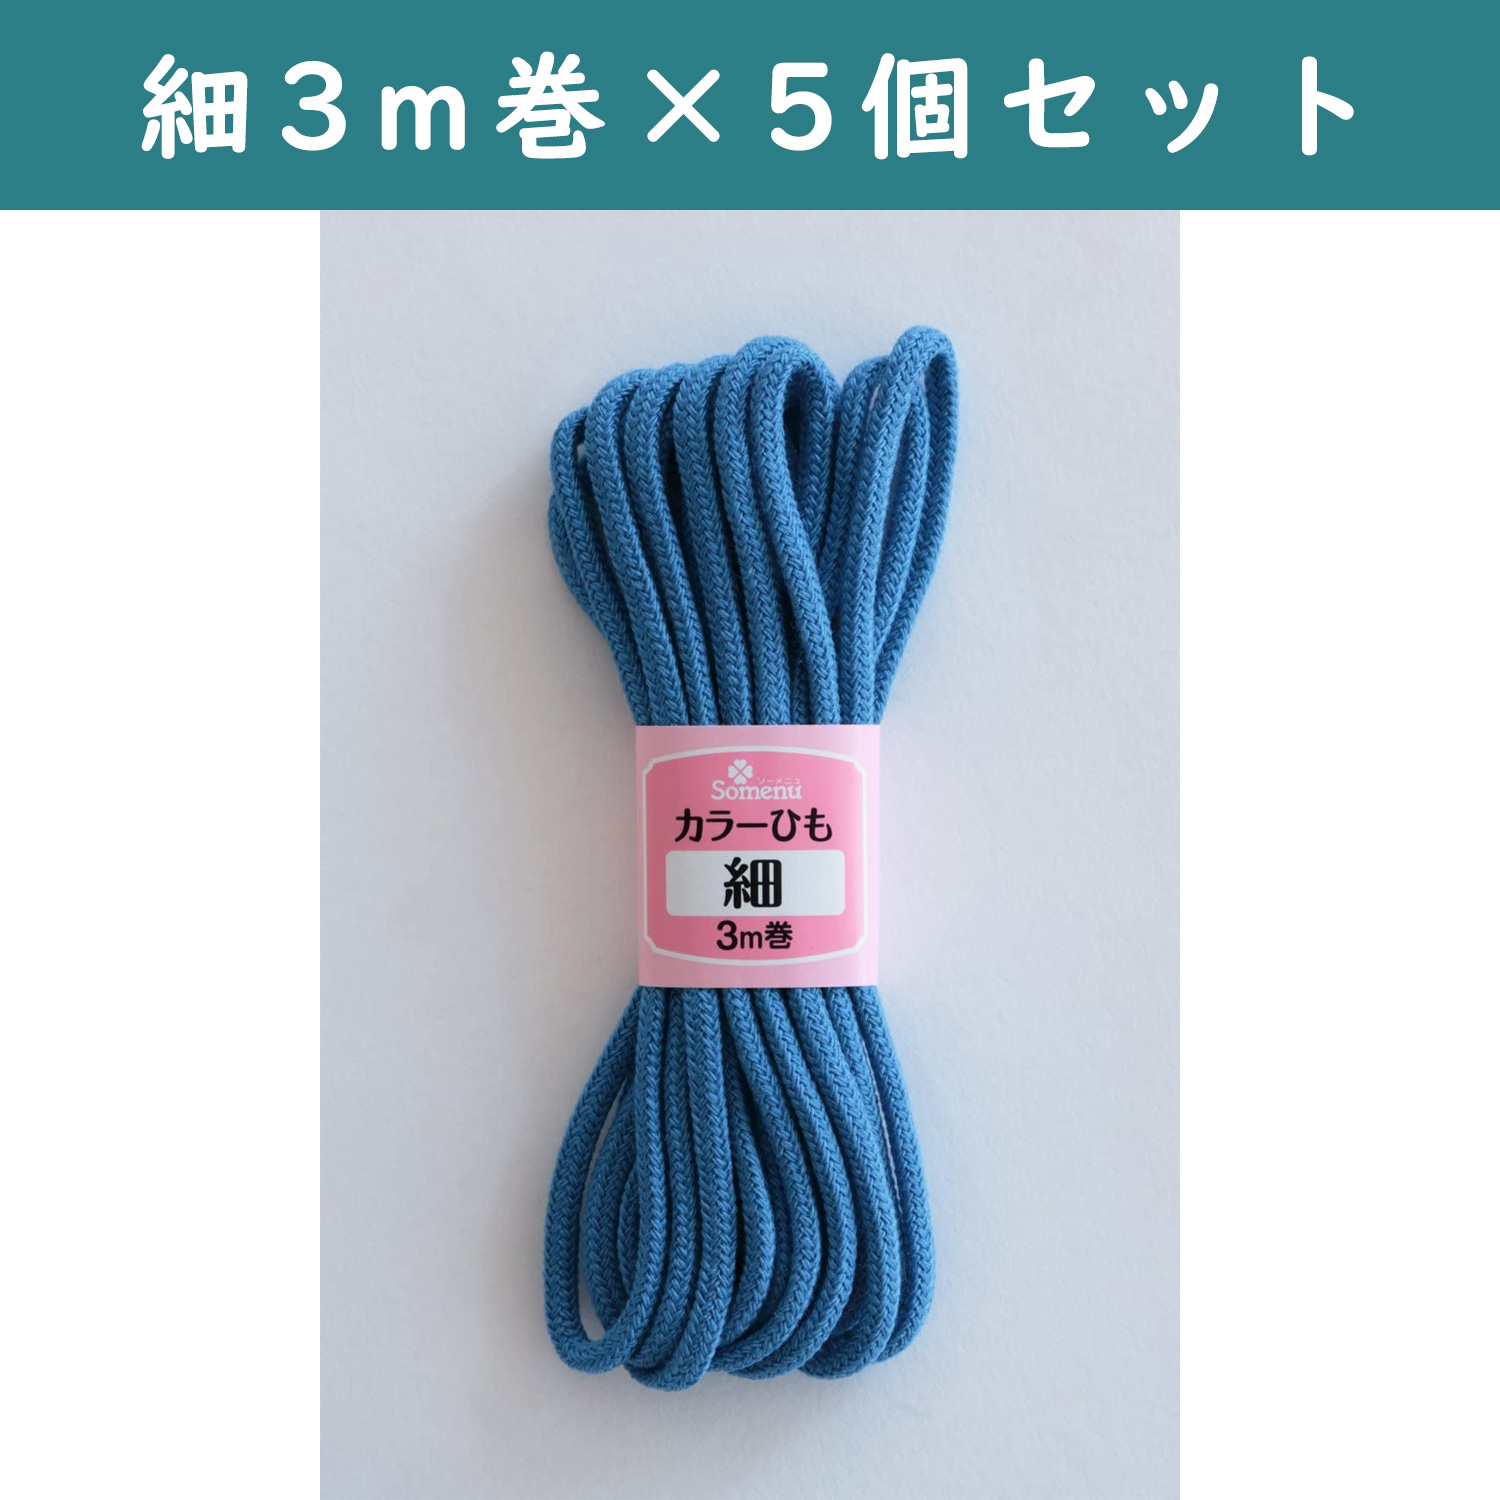 ■【5個】CL26-139-5set カラーひも 細 3m巻 コバルトブルー 5個セット (セット)